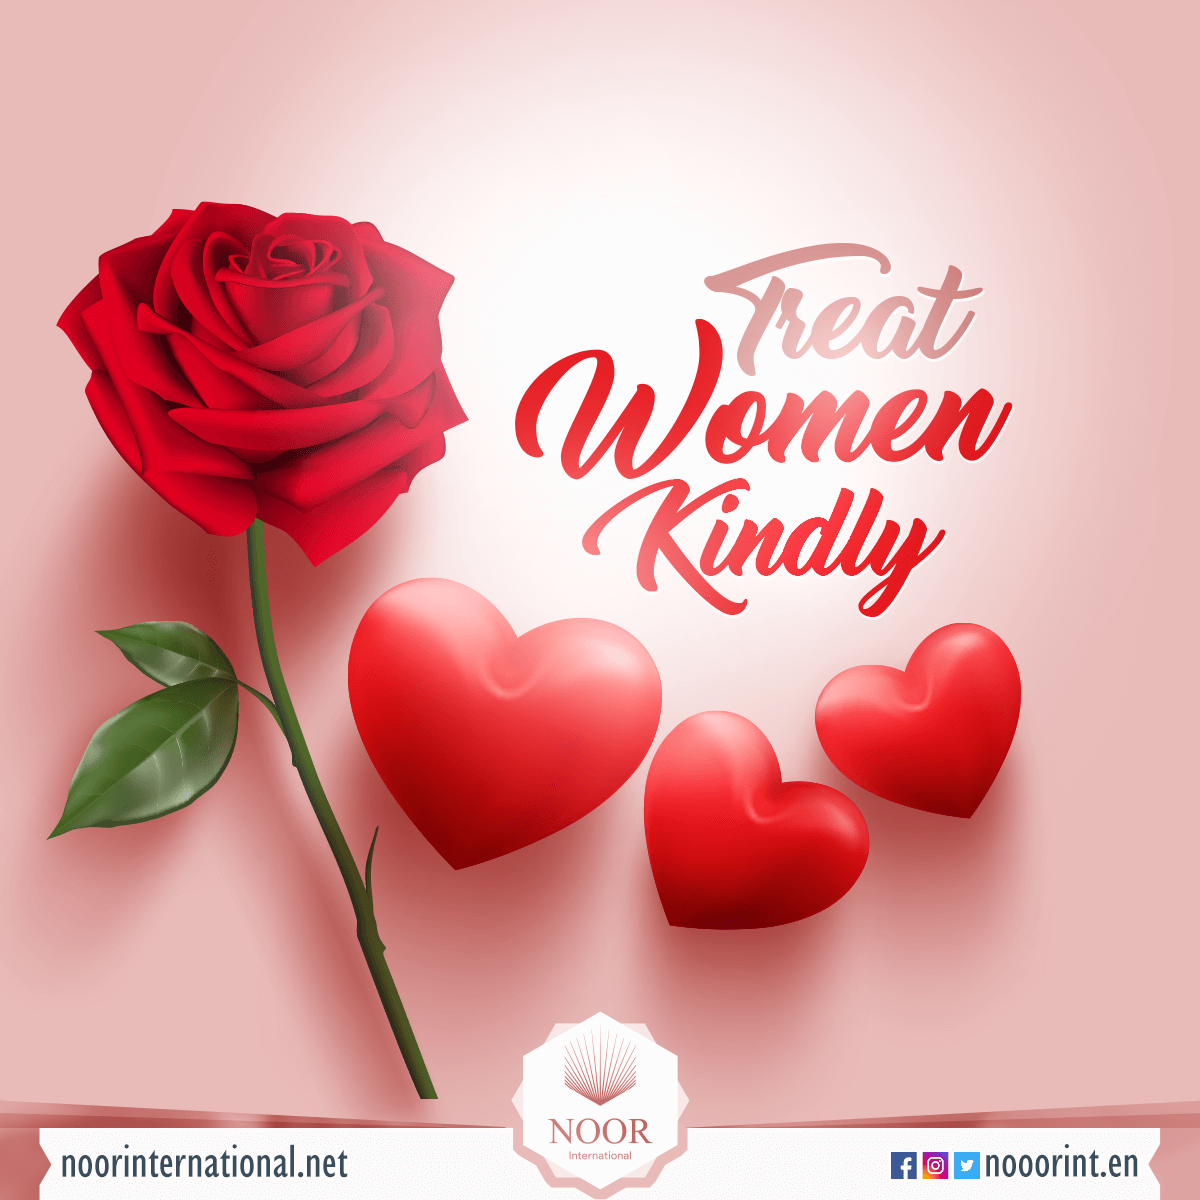 Treat women kindly